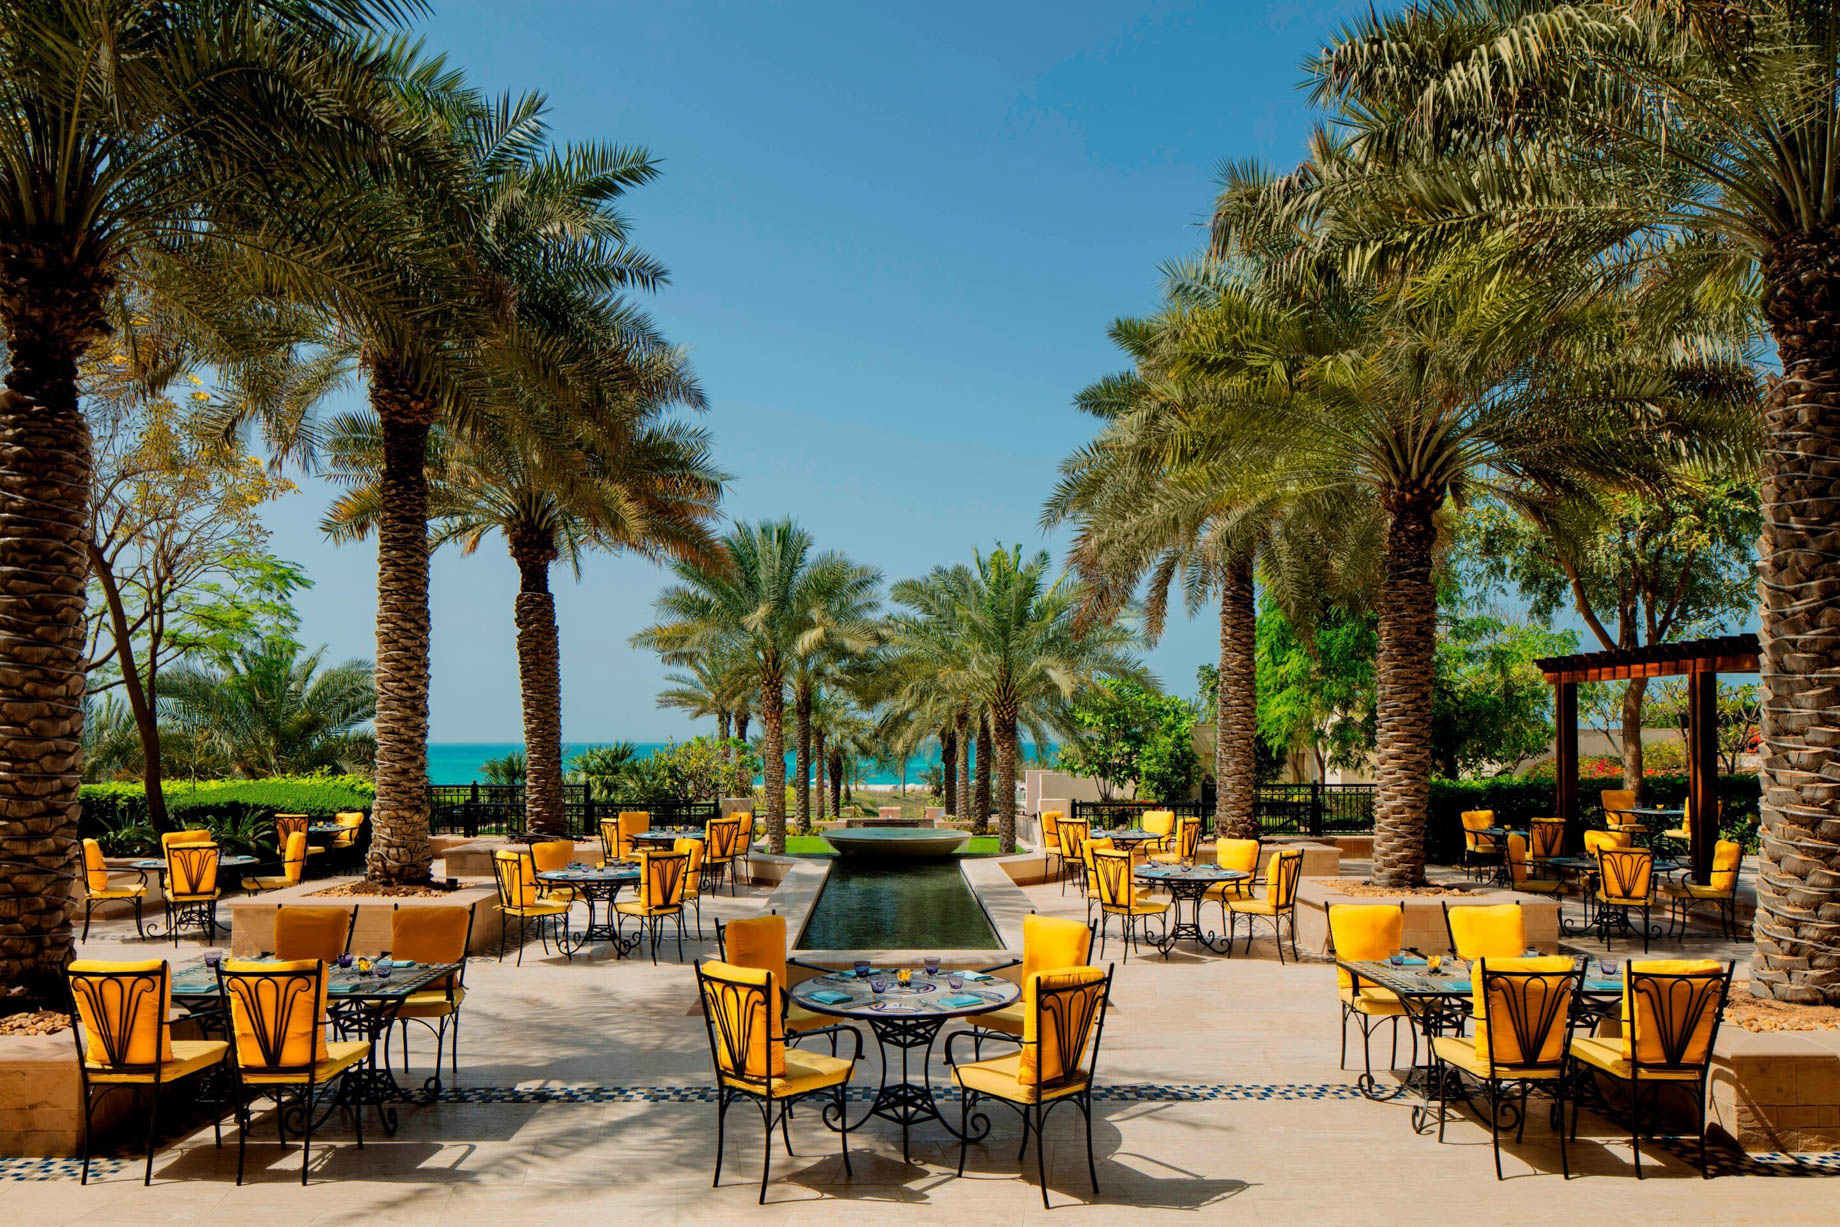 The St. Regis Saadiyat Island Resort – Abu Dhabi, UAE – Olea Restaurant Terrace